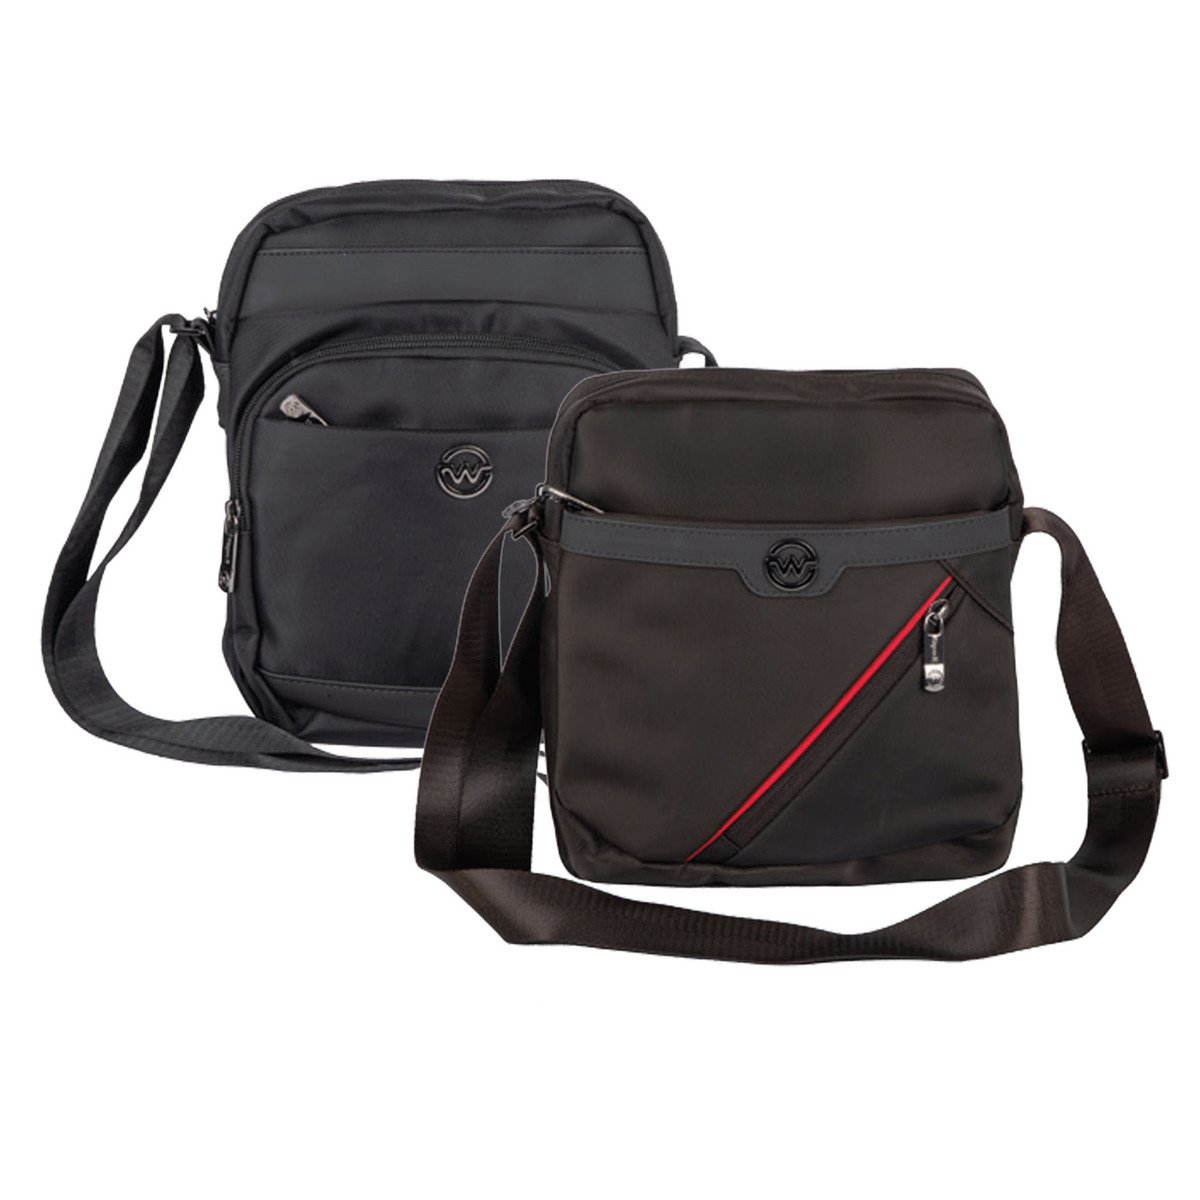 Wagon R Shoulder Bag K-4331 Assorted Per pc